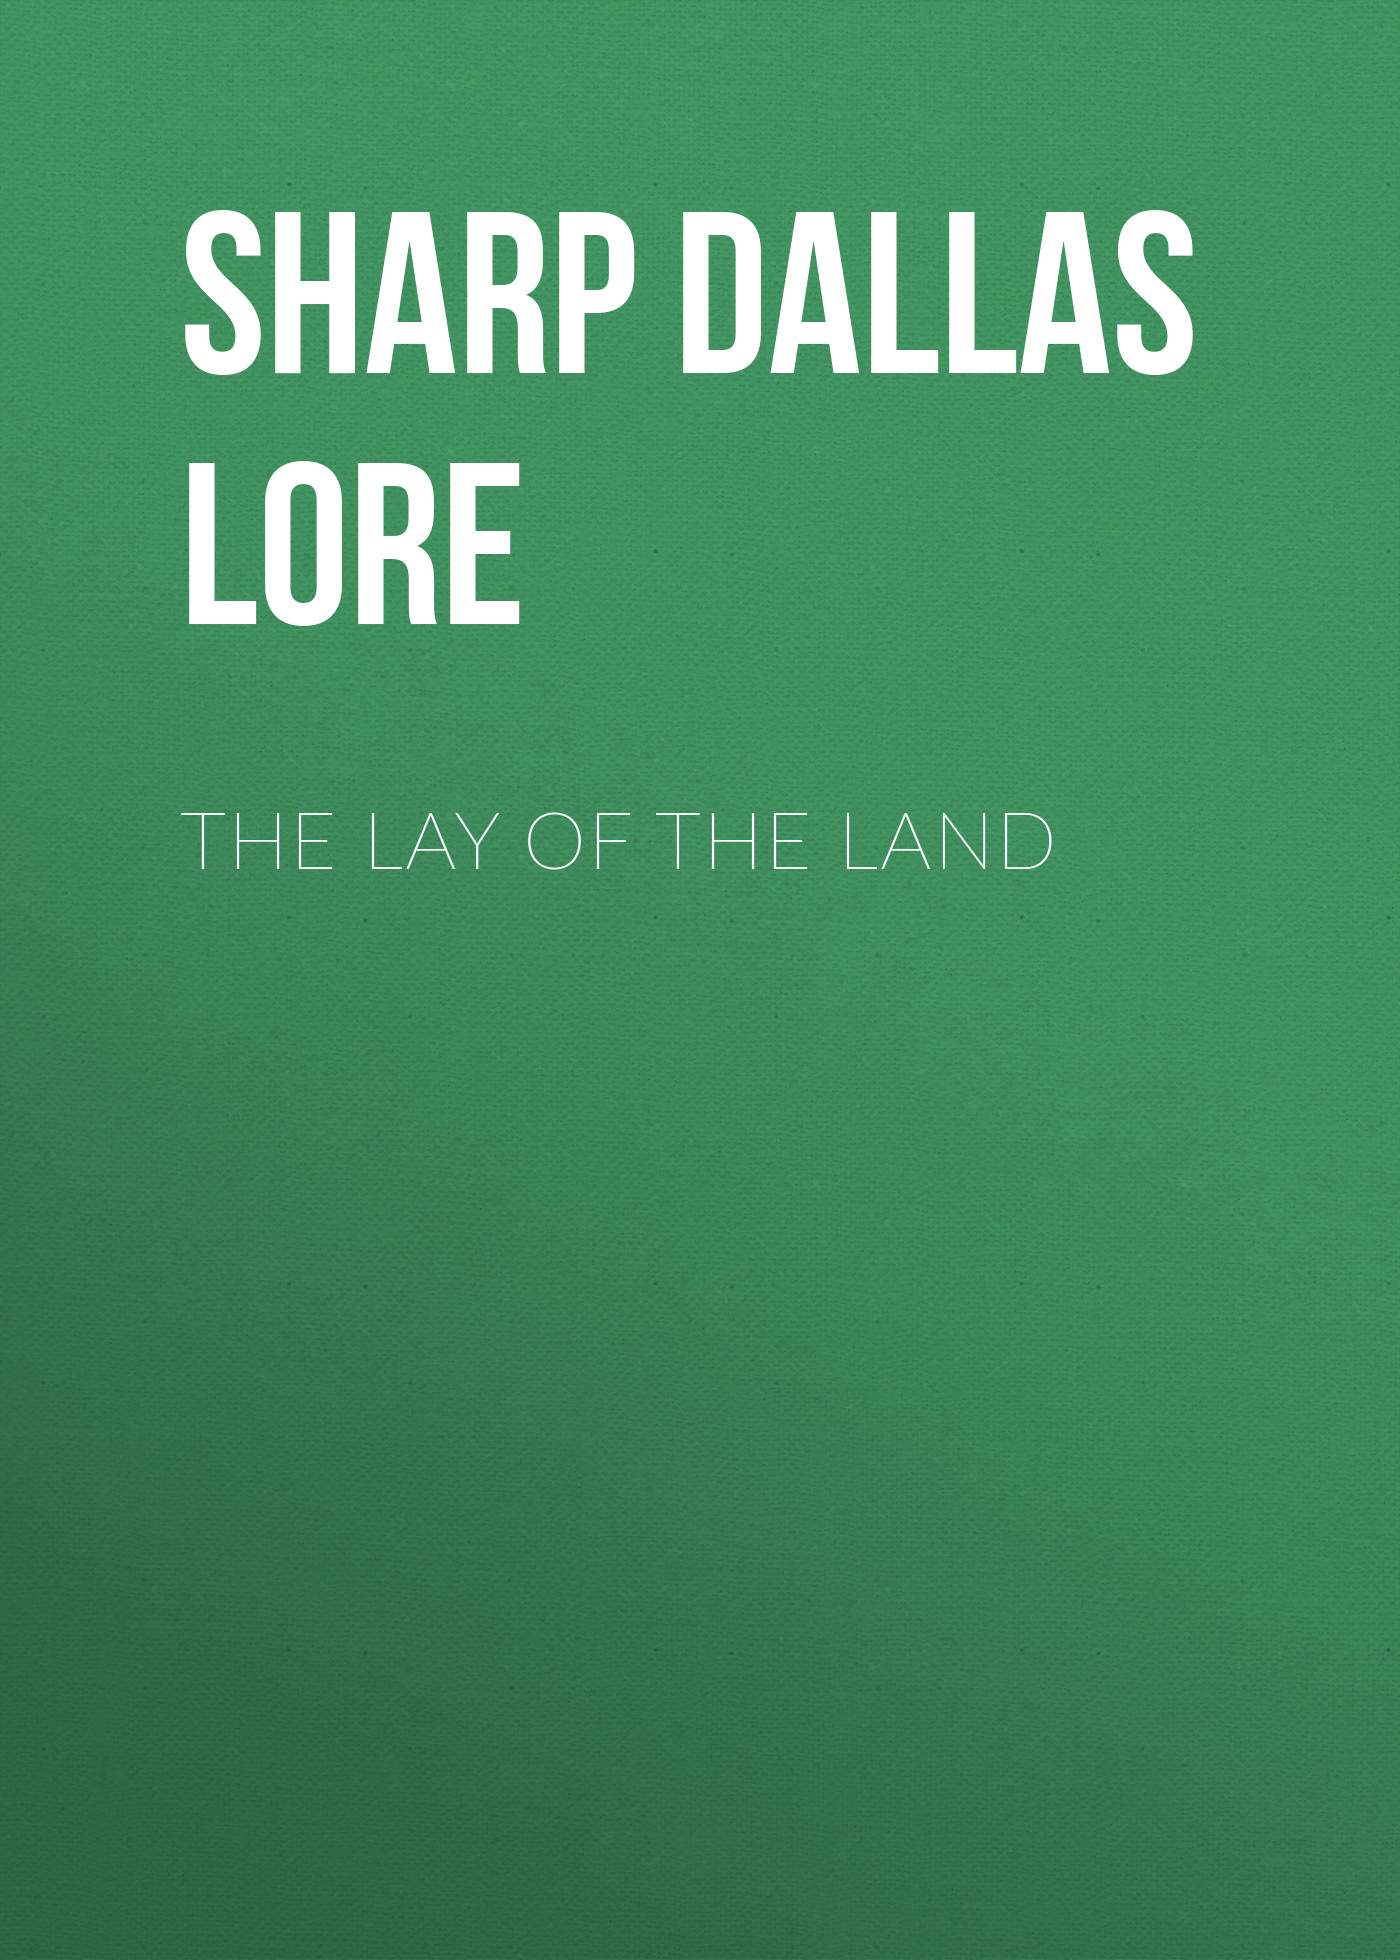 Книга The Lay of the Land из серии , созданная Dallas Sharp, может относится к жанру Природа и животные, Зарубежная старинная литература, Зарубежная классика. Стоимость книги The Lay of the Land  с идентификатором 25570207 составляет 0 руб.